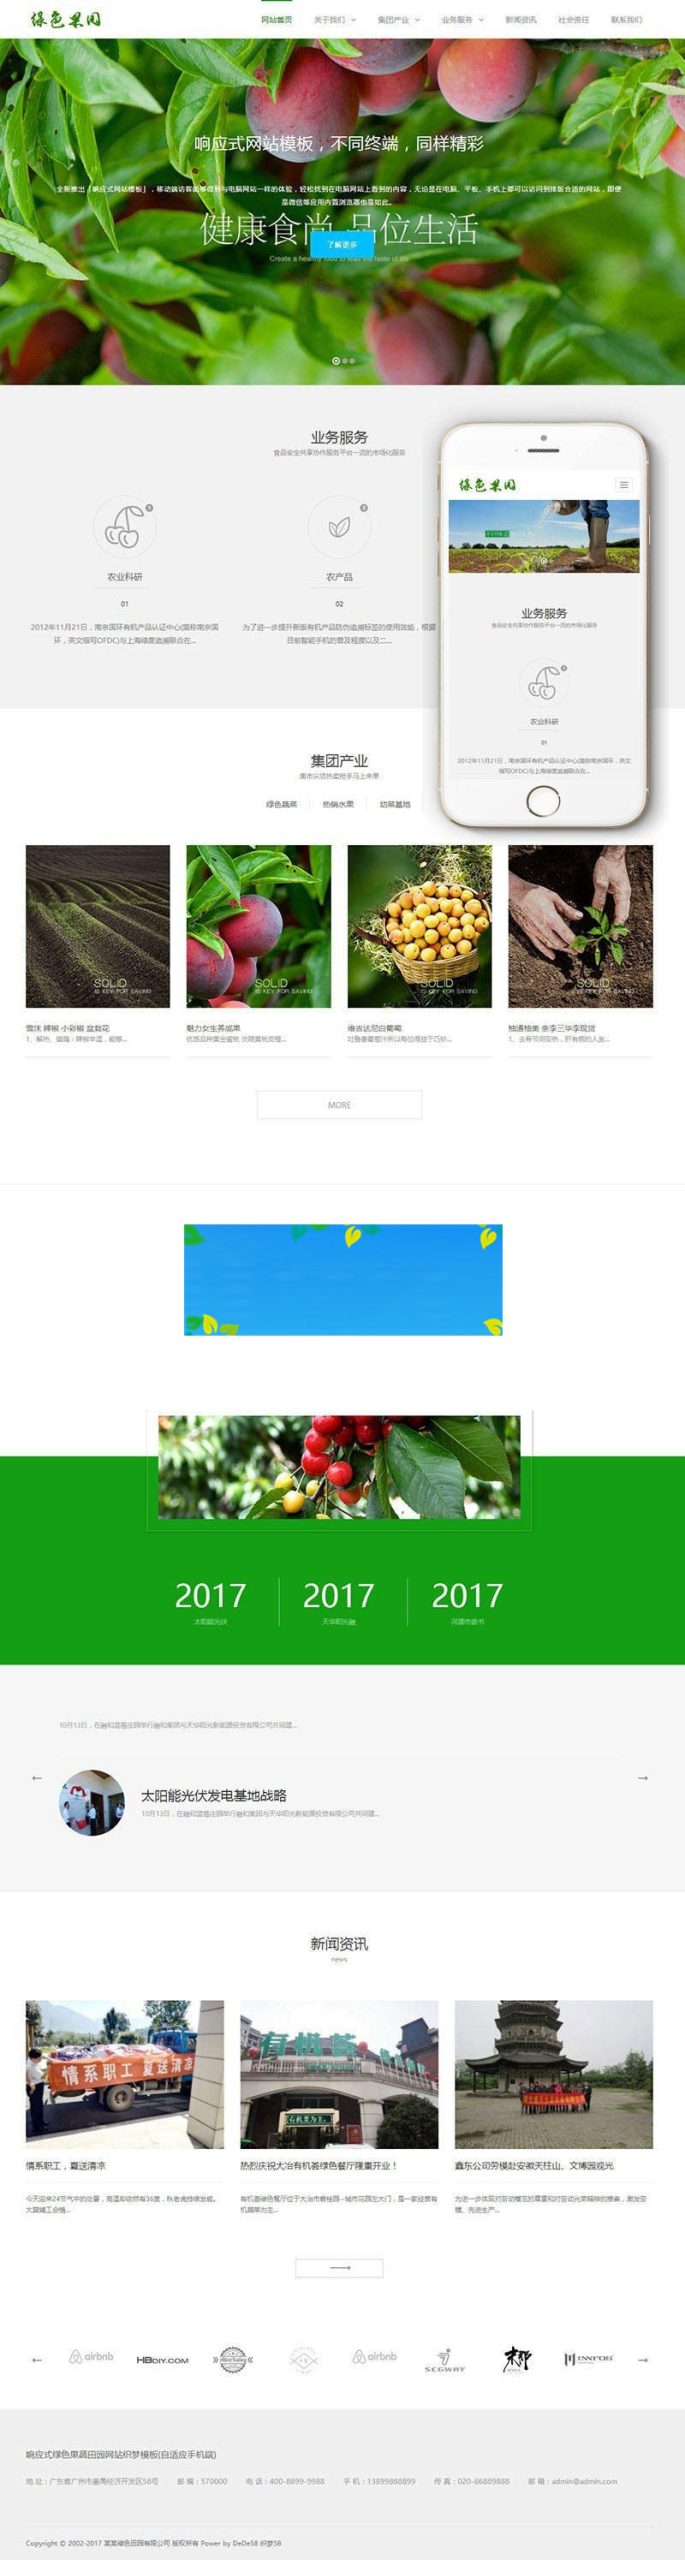 织梦dedecms相应式绿色生果菜蔬农业公司网站模板(自顺应手机移动端)-零度空间